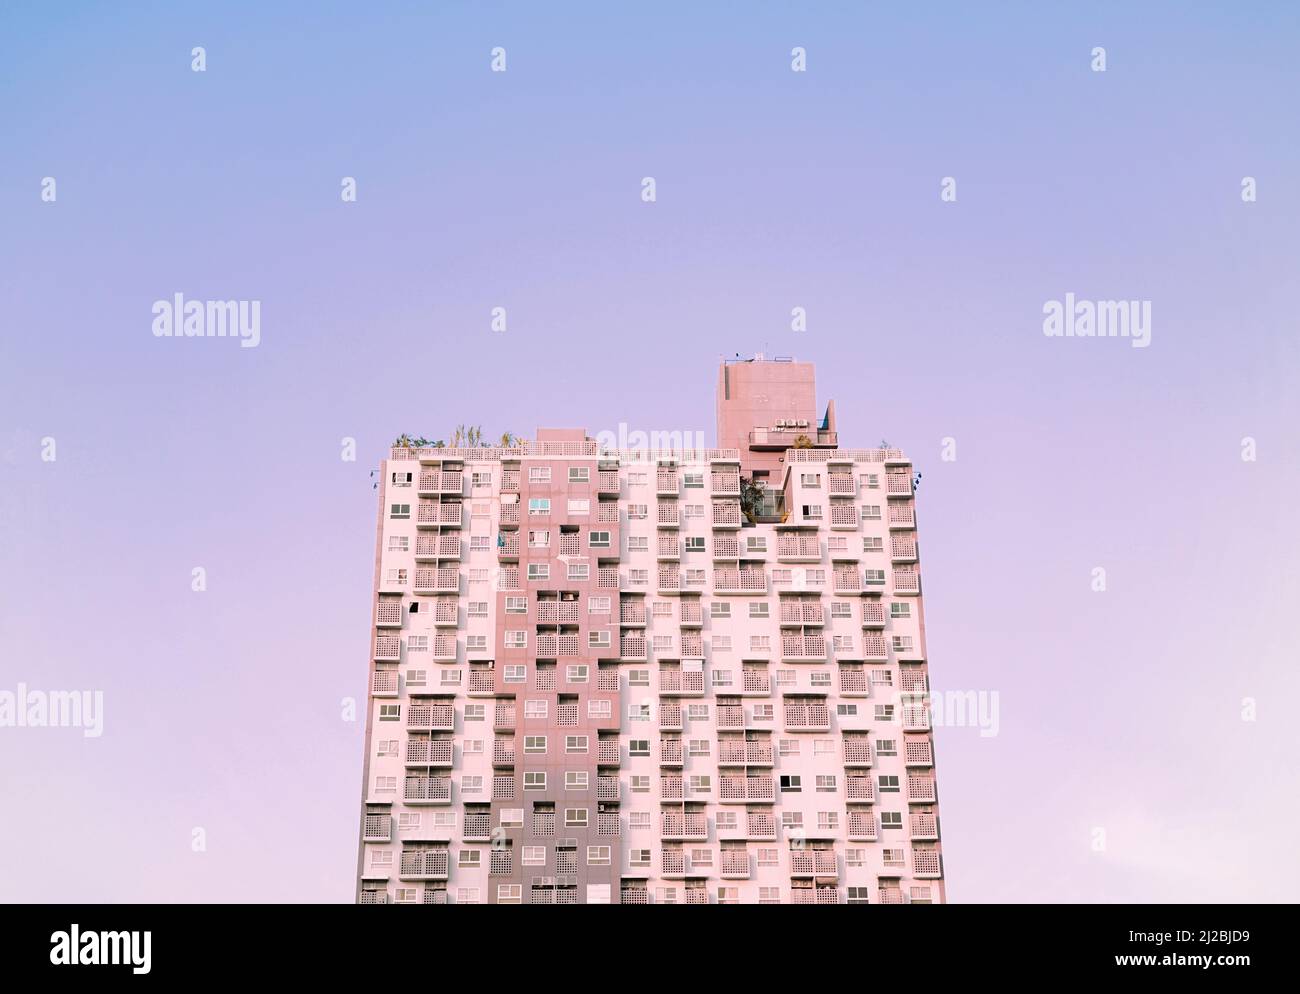 Städtische Eigentumswohnung, moderne flache kosmopolitische Wohngebäude Struktur gegen pastellfarbene Lavendel lila blau Gradienten Skyline Hintergrund. Stockfoto